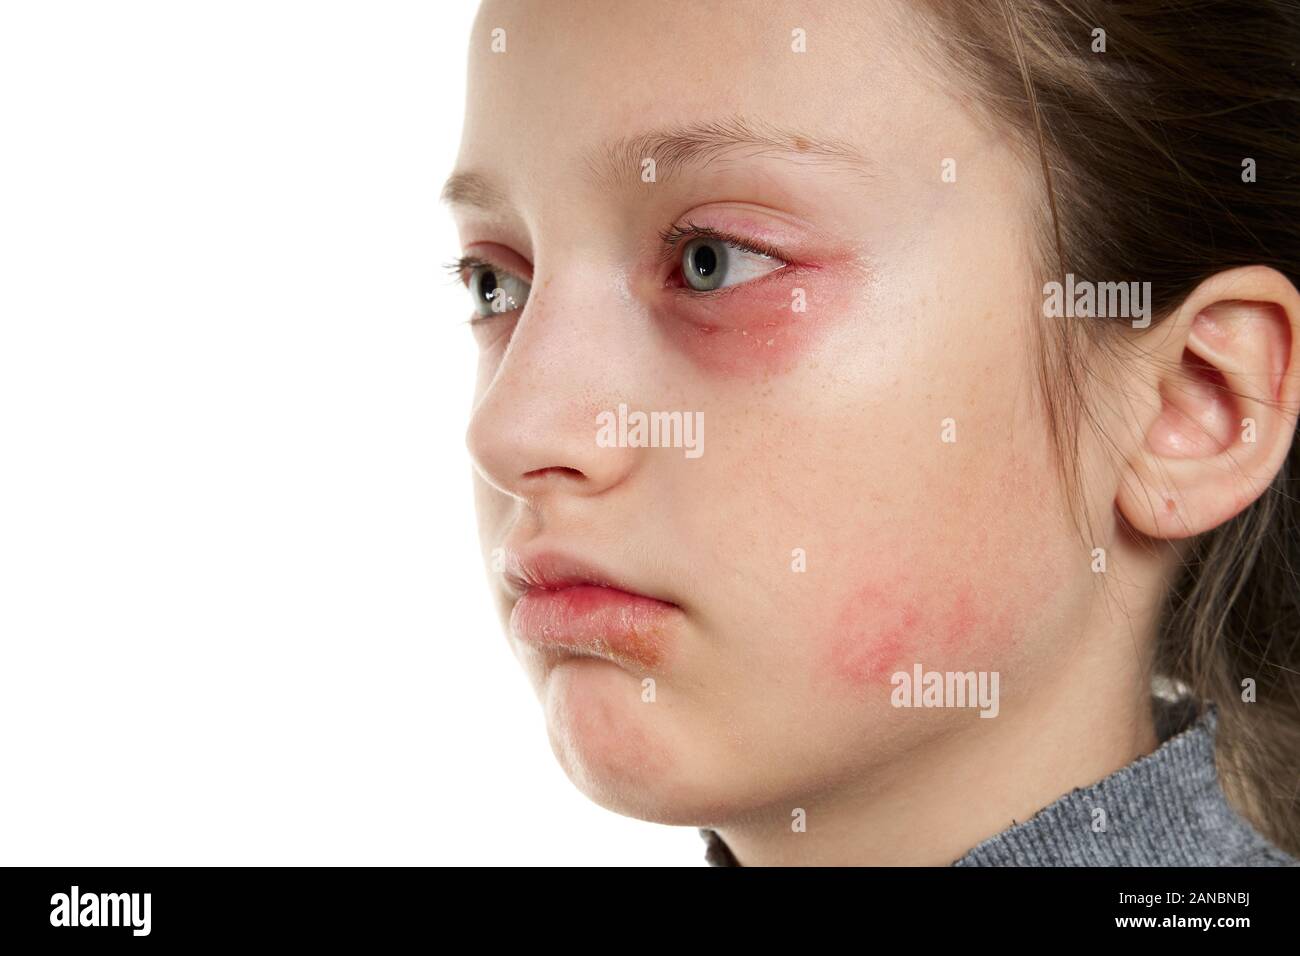 mild allergic reaction on face